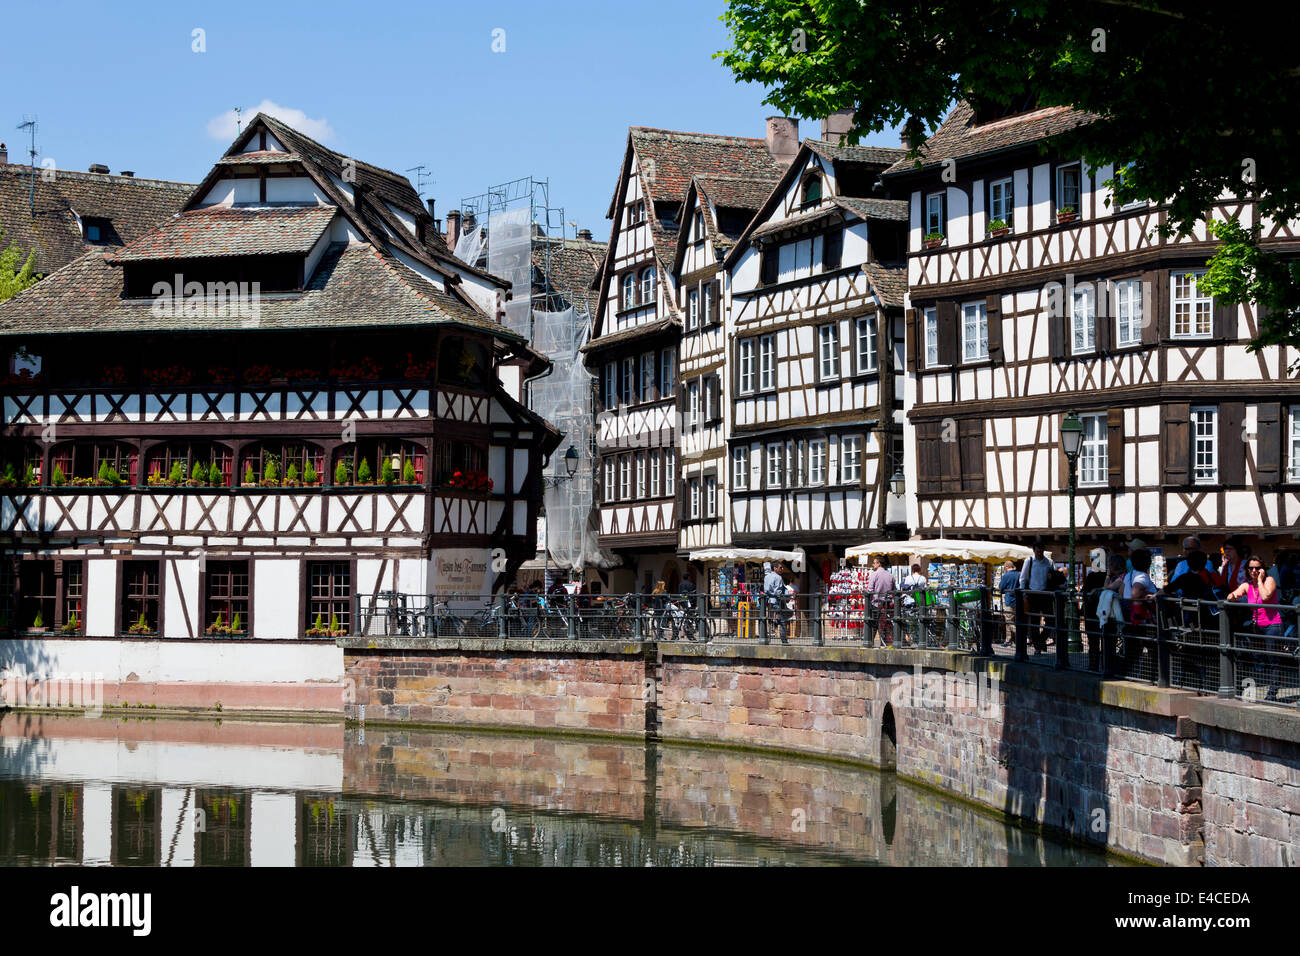 Maison à colombages typique de la vieille ville de Strasbourg, France Banque D'Images